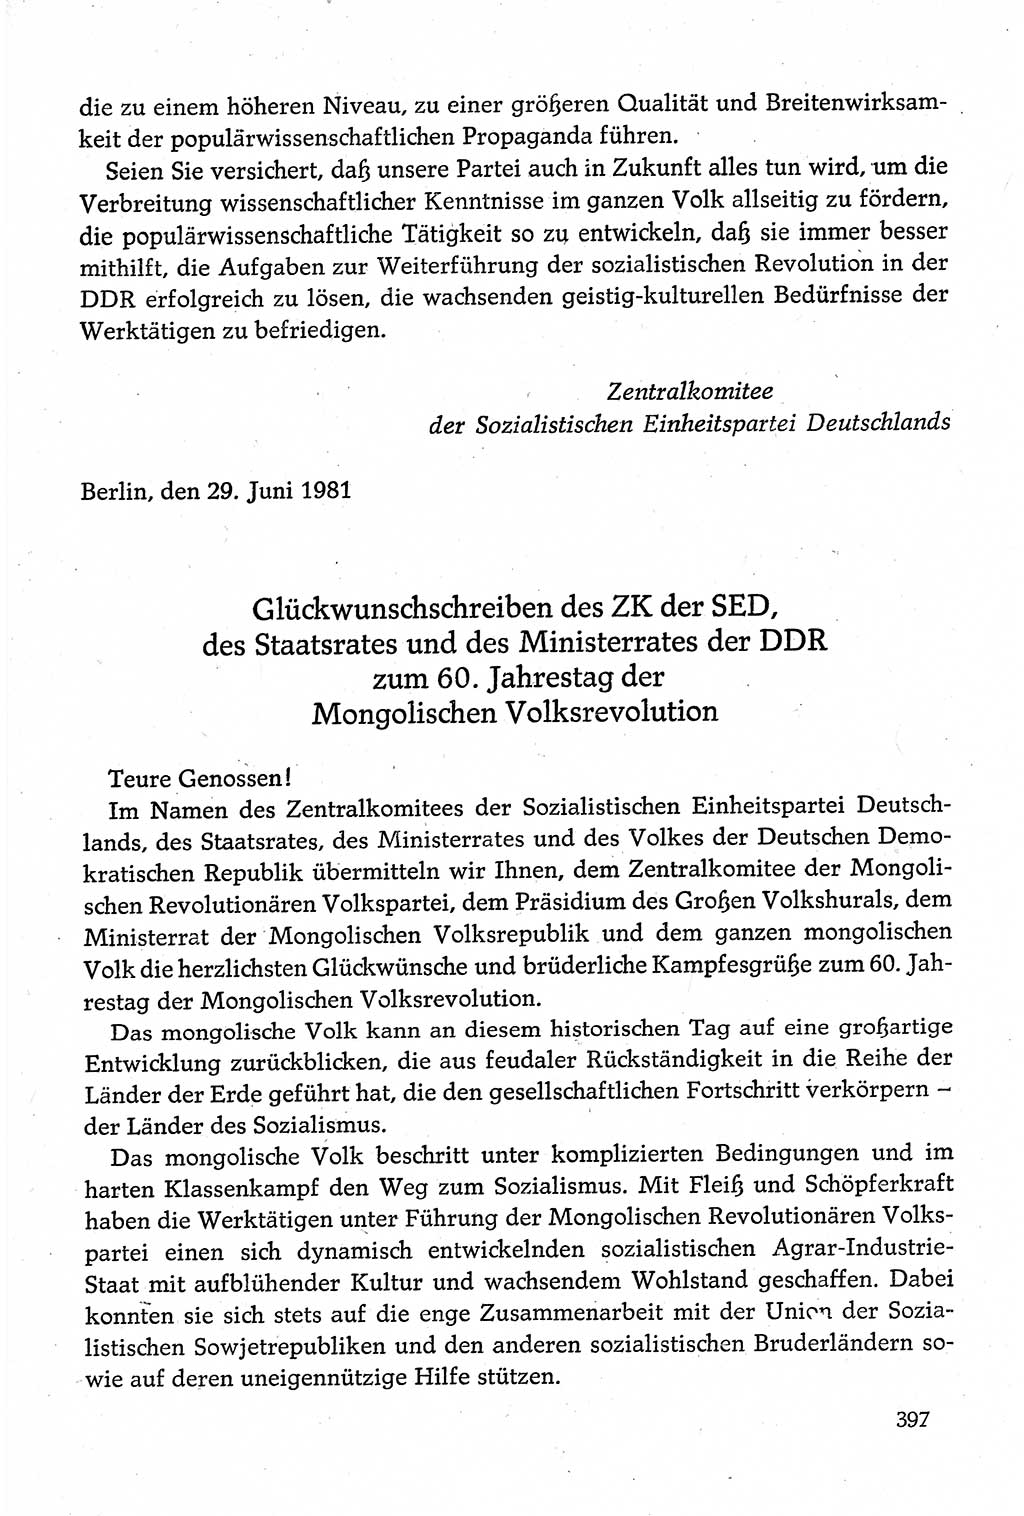 Dokumente der Sozialistischen Einheitspartei Deutschlands (SED) [Deutsche Demokratische Republik (DDR)] 1980-1981, Seite 397 (Dok. SED DDR 1980-1981, S. 397)